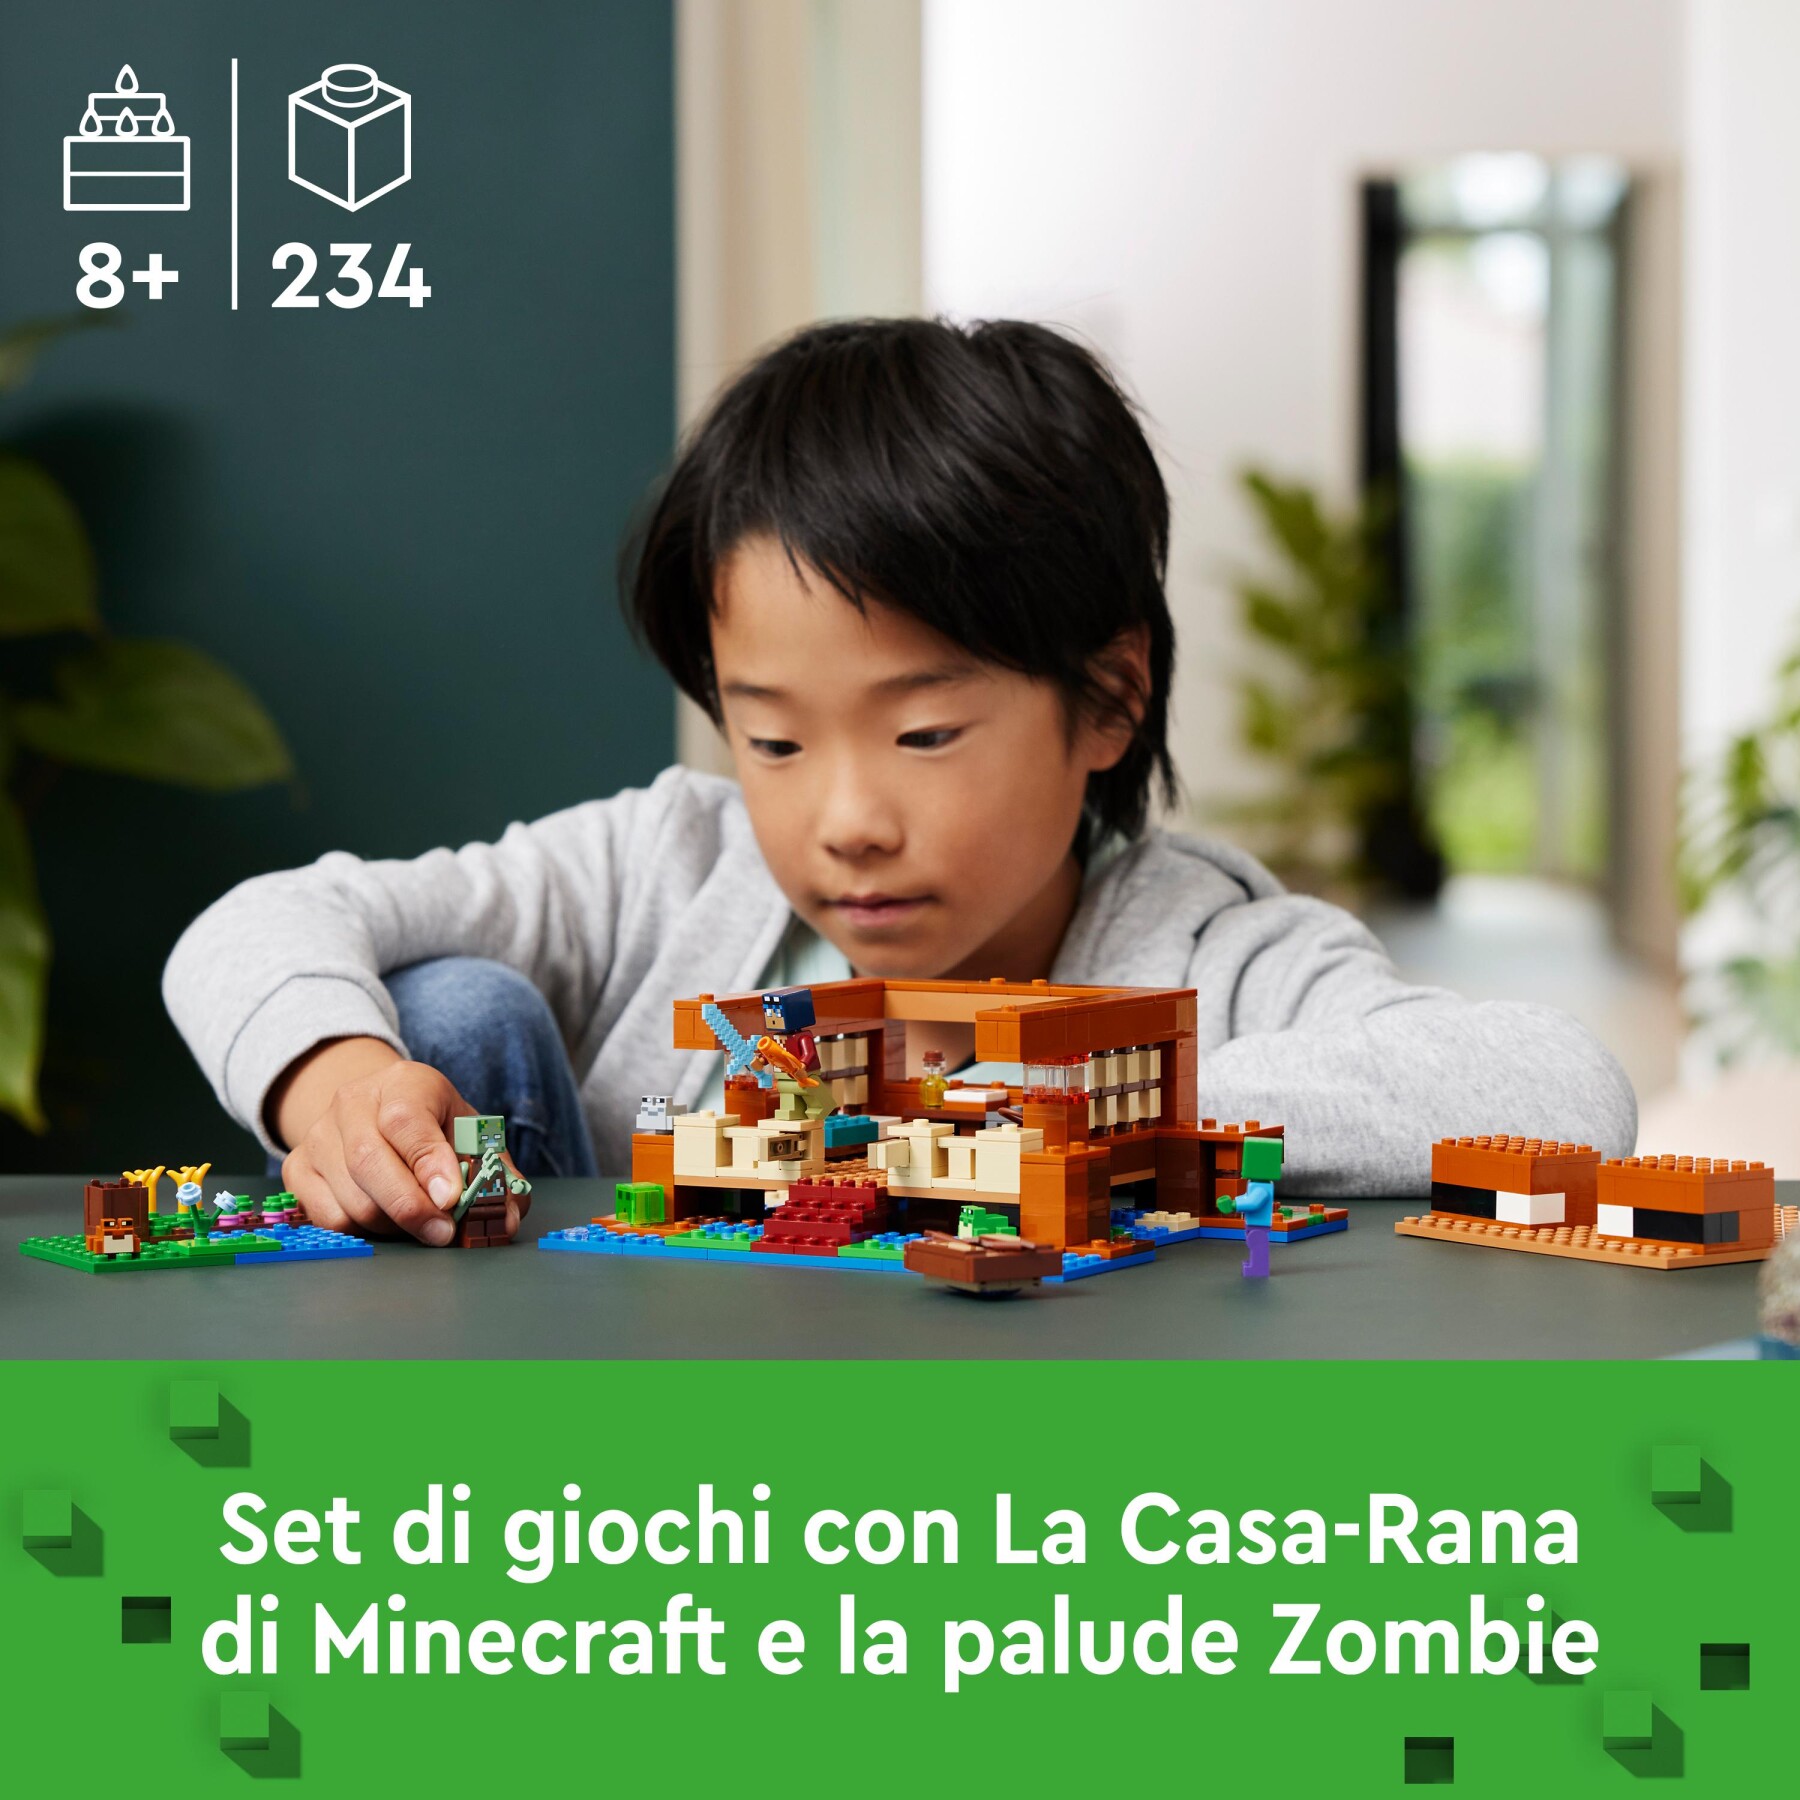 Lego minecraft 21256 la casa-rana, giocattolo da costruire per bambini di 8+ anni con personaggi, mob e animali del videogioco - MINECRAFT